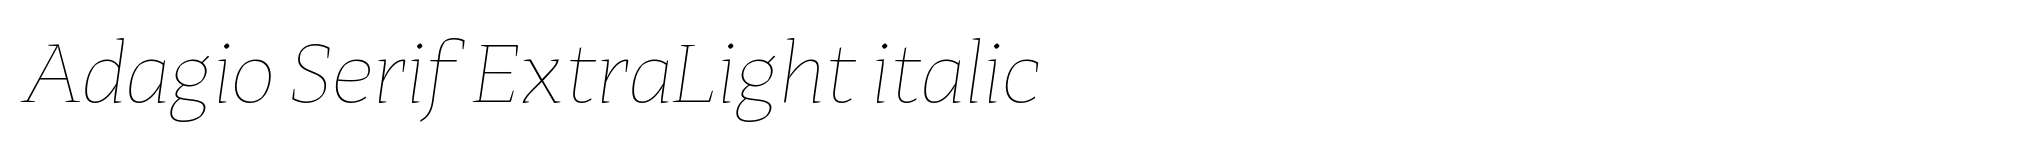 Adagio Serif ExtraLight italic image